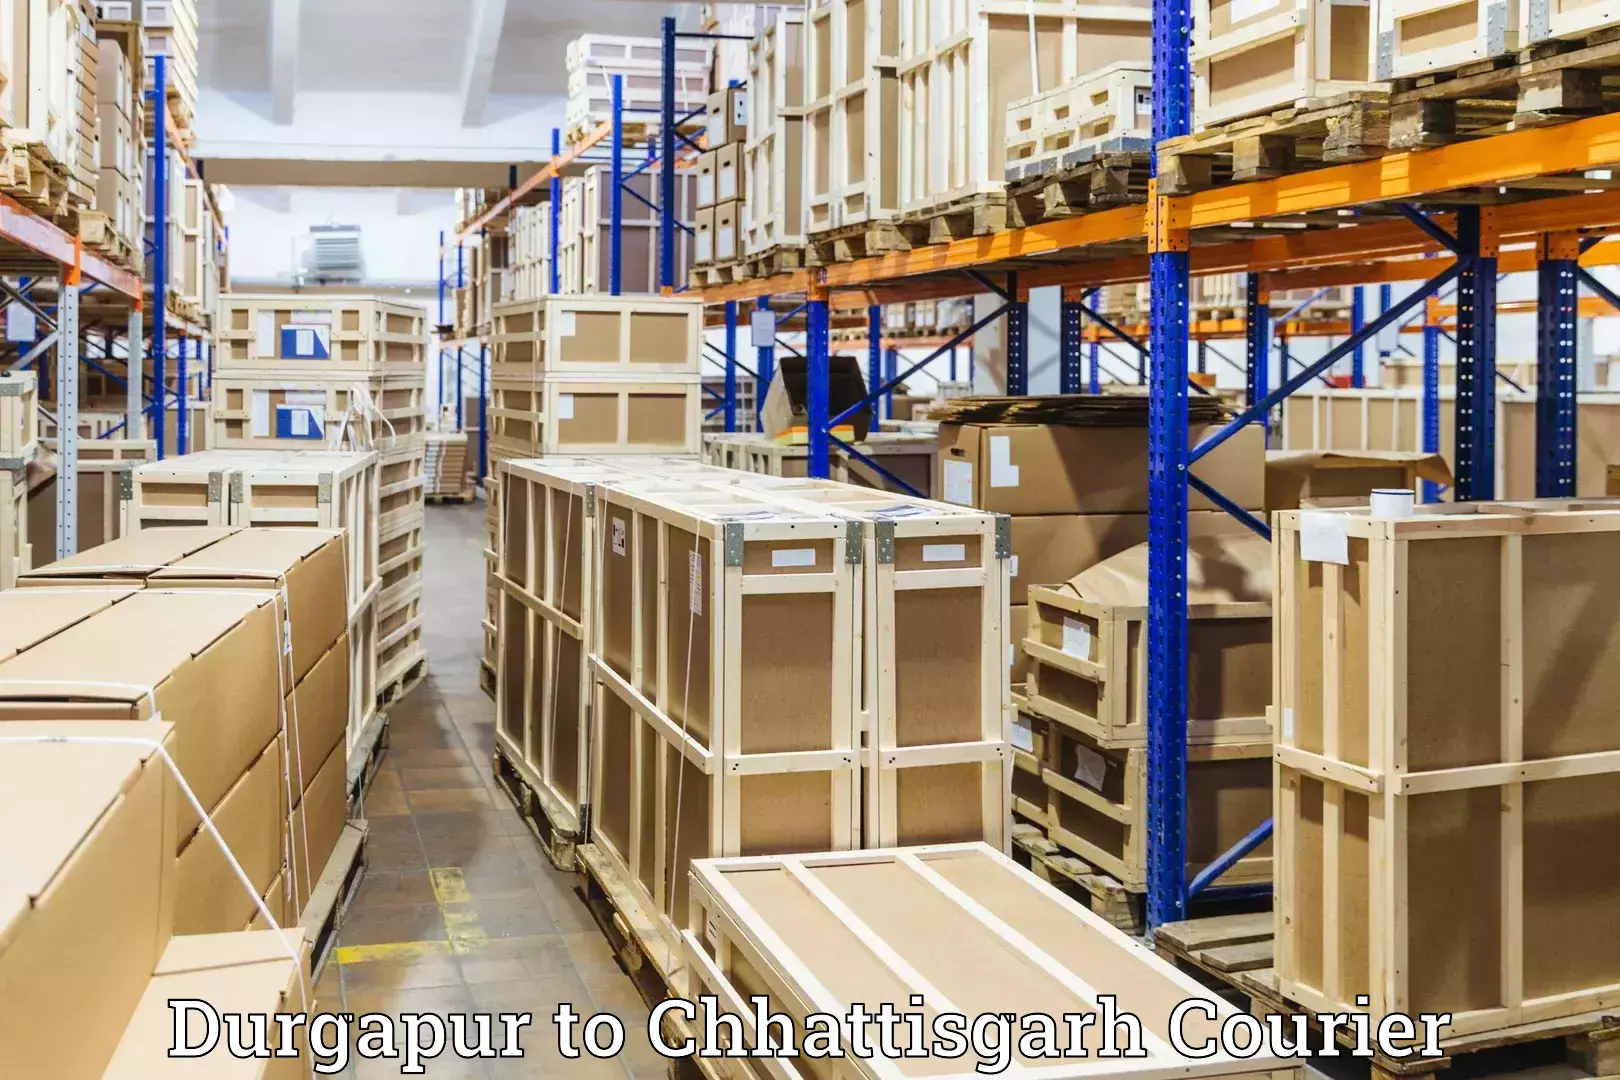 Baggage delivery optimization Durgapur to Chhattisgarh